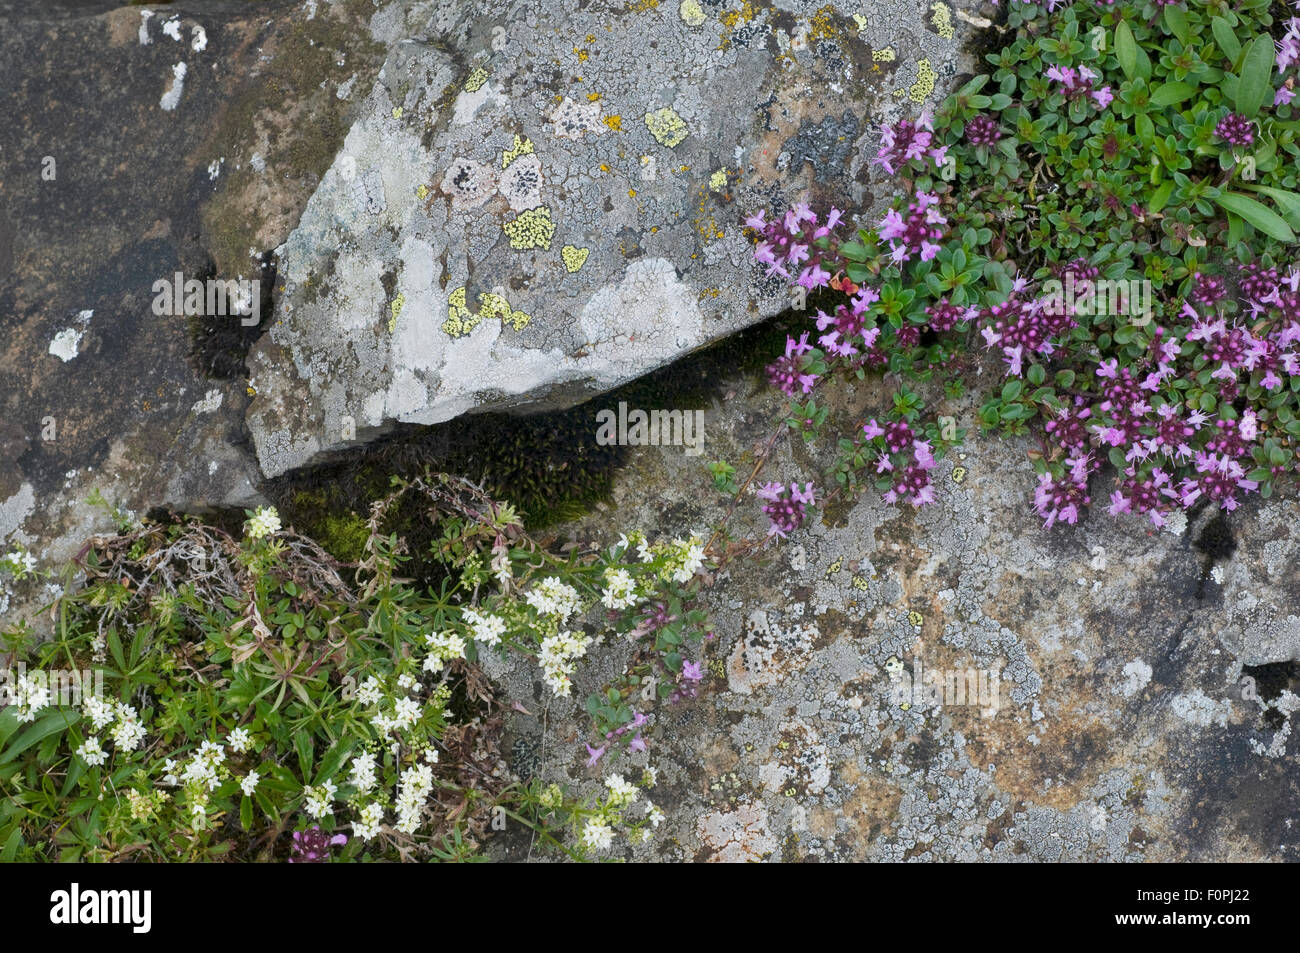 Wild thyme (Thymus polytrichus) and a Brassica in flower, Liechtenstein, June 2009 Stock Photo